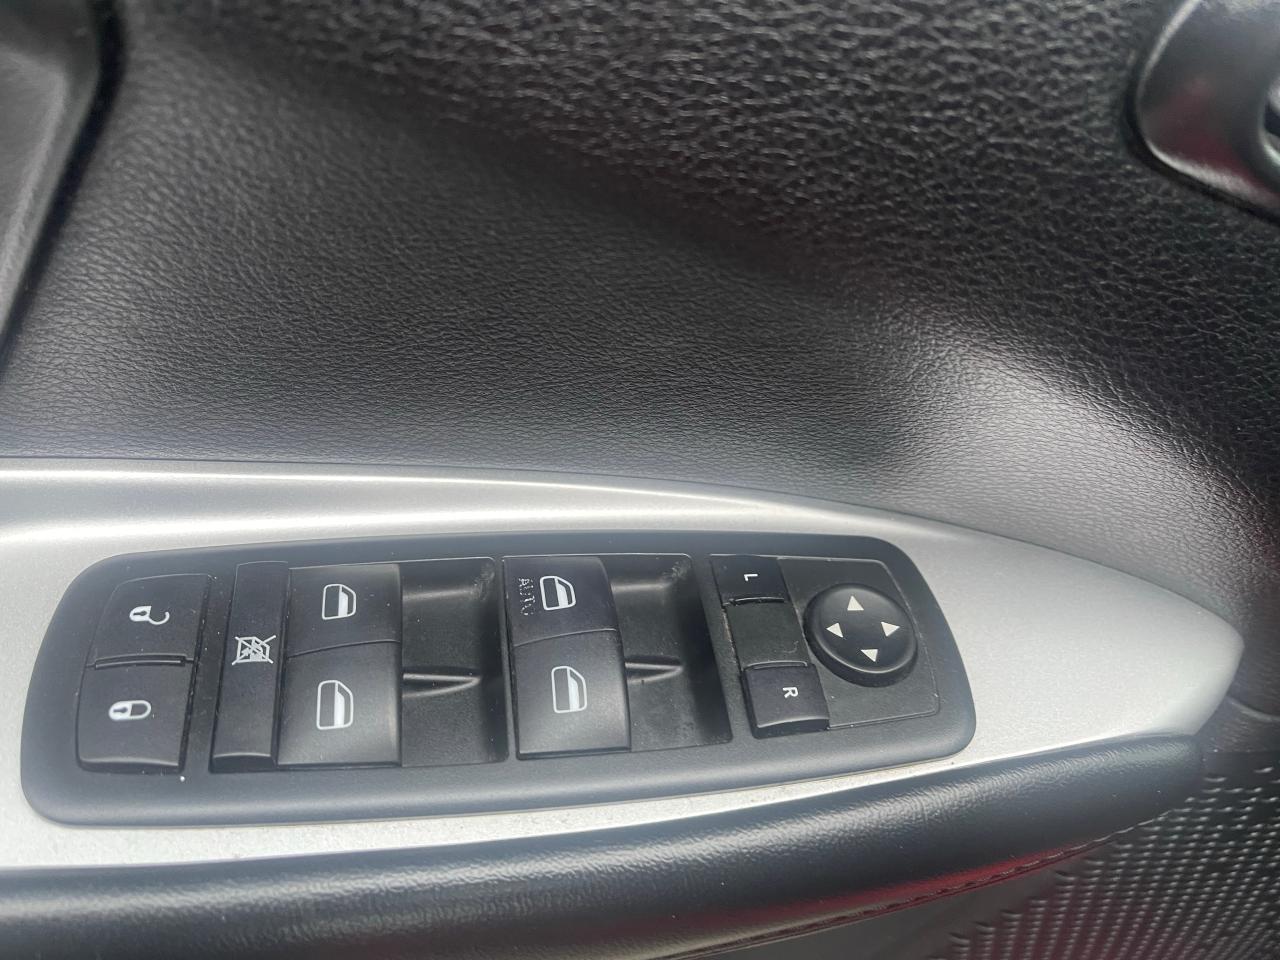 2015 Dodge Journey SE Plus, 7 Passengers, rear heat/air, alloy wheels - Photo #11